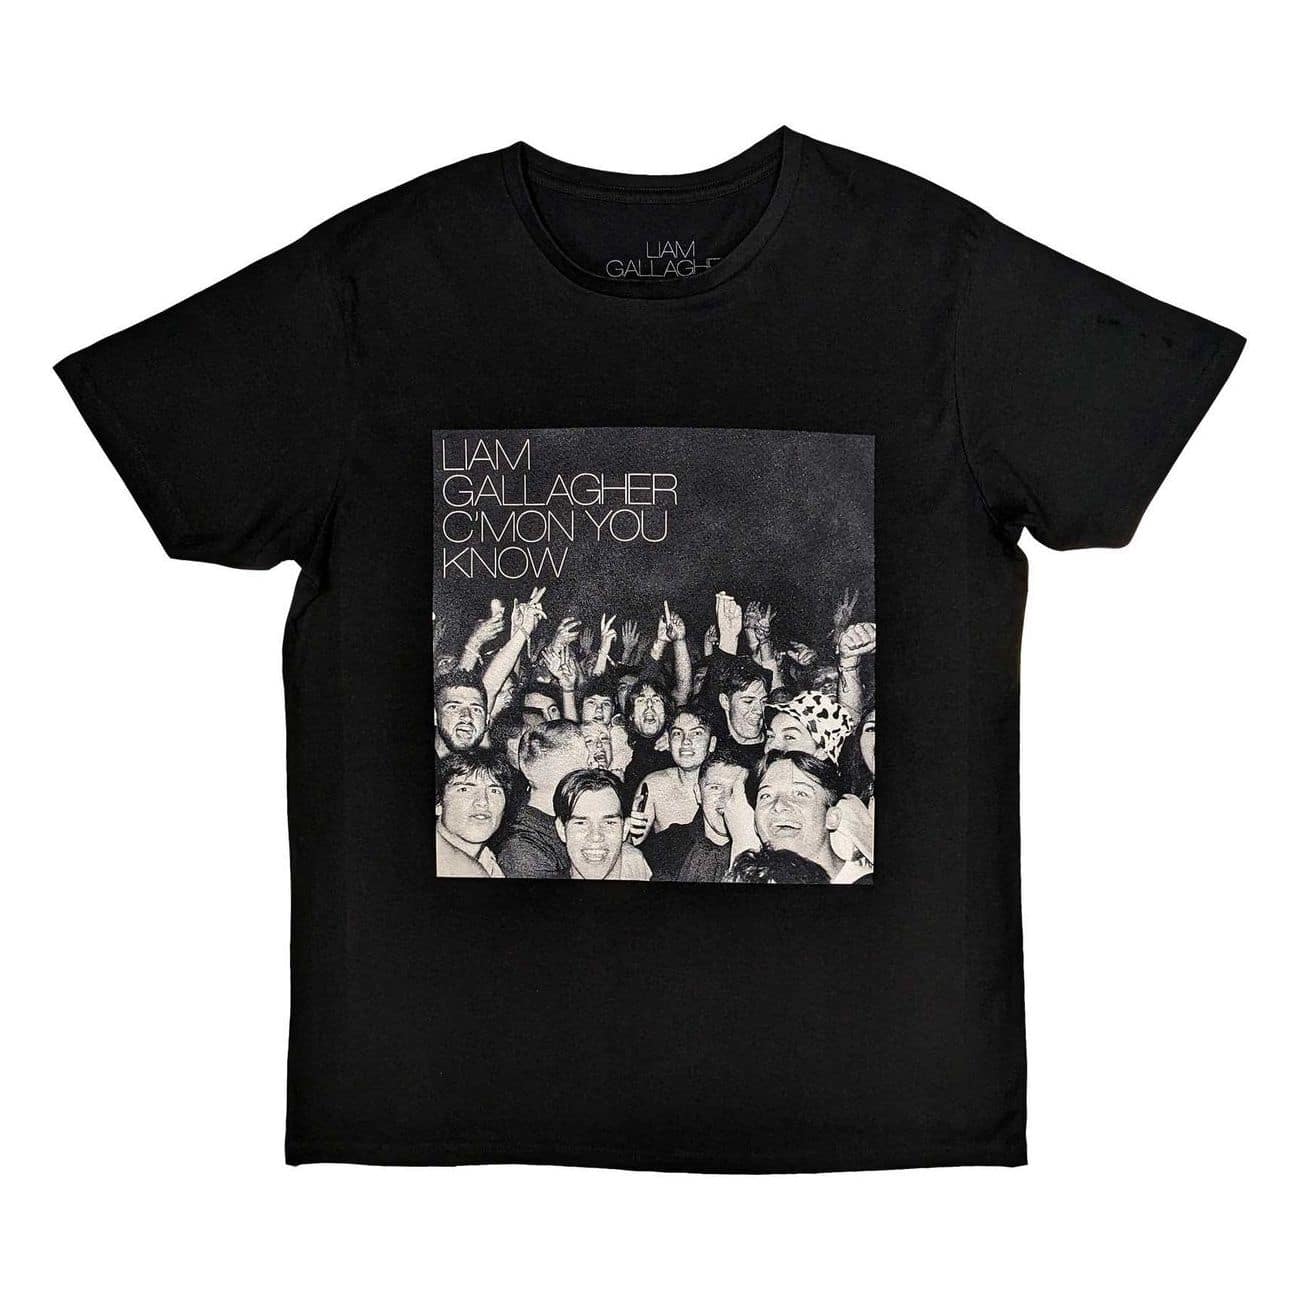 Liam Gallagher  XL　Tシャツ リアム・ギャラガー